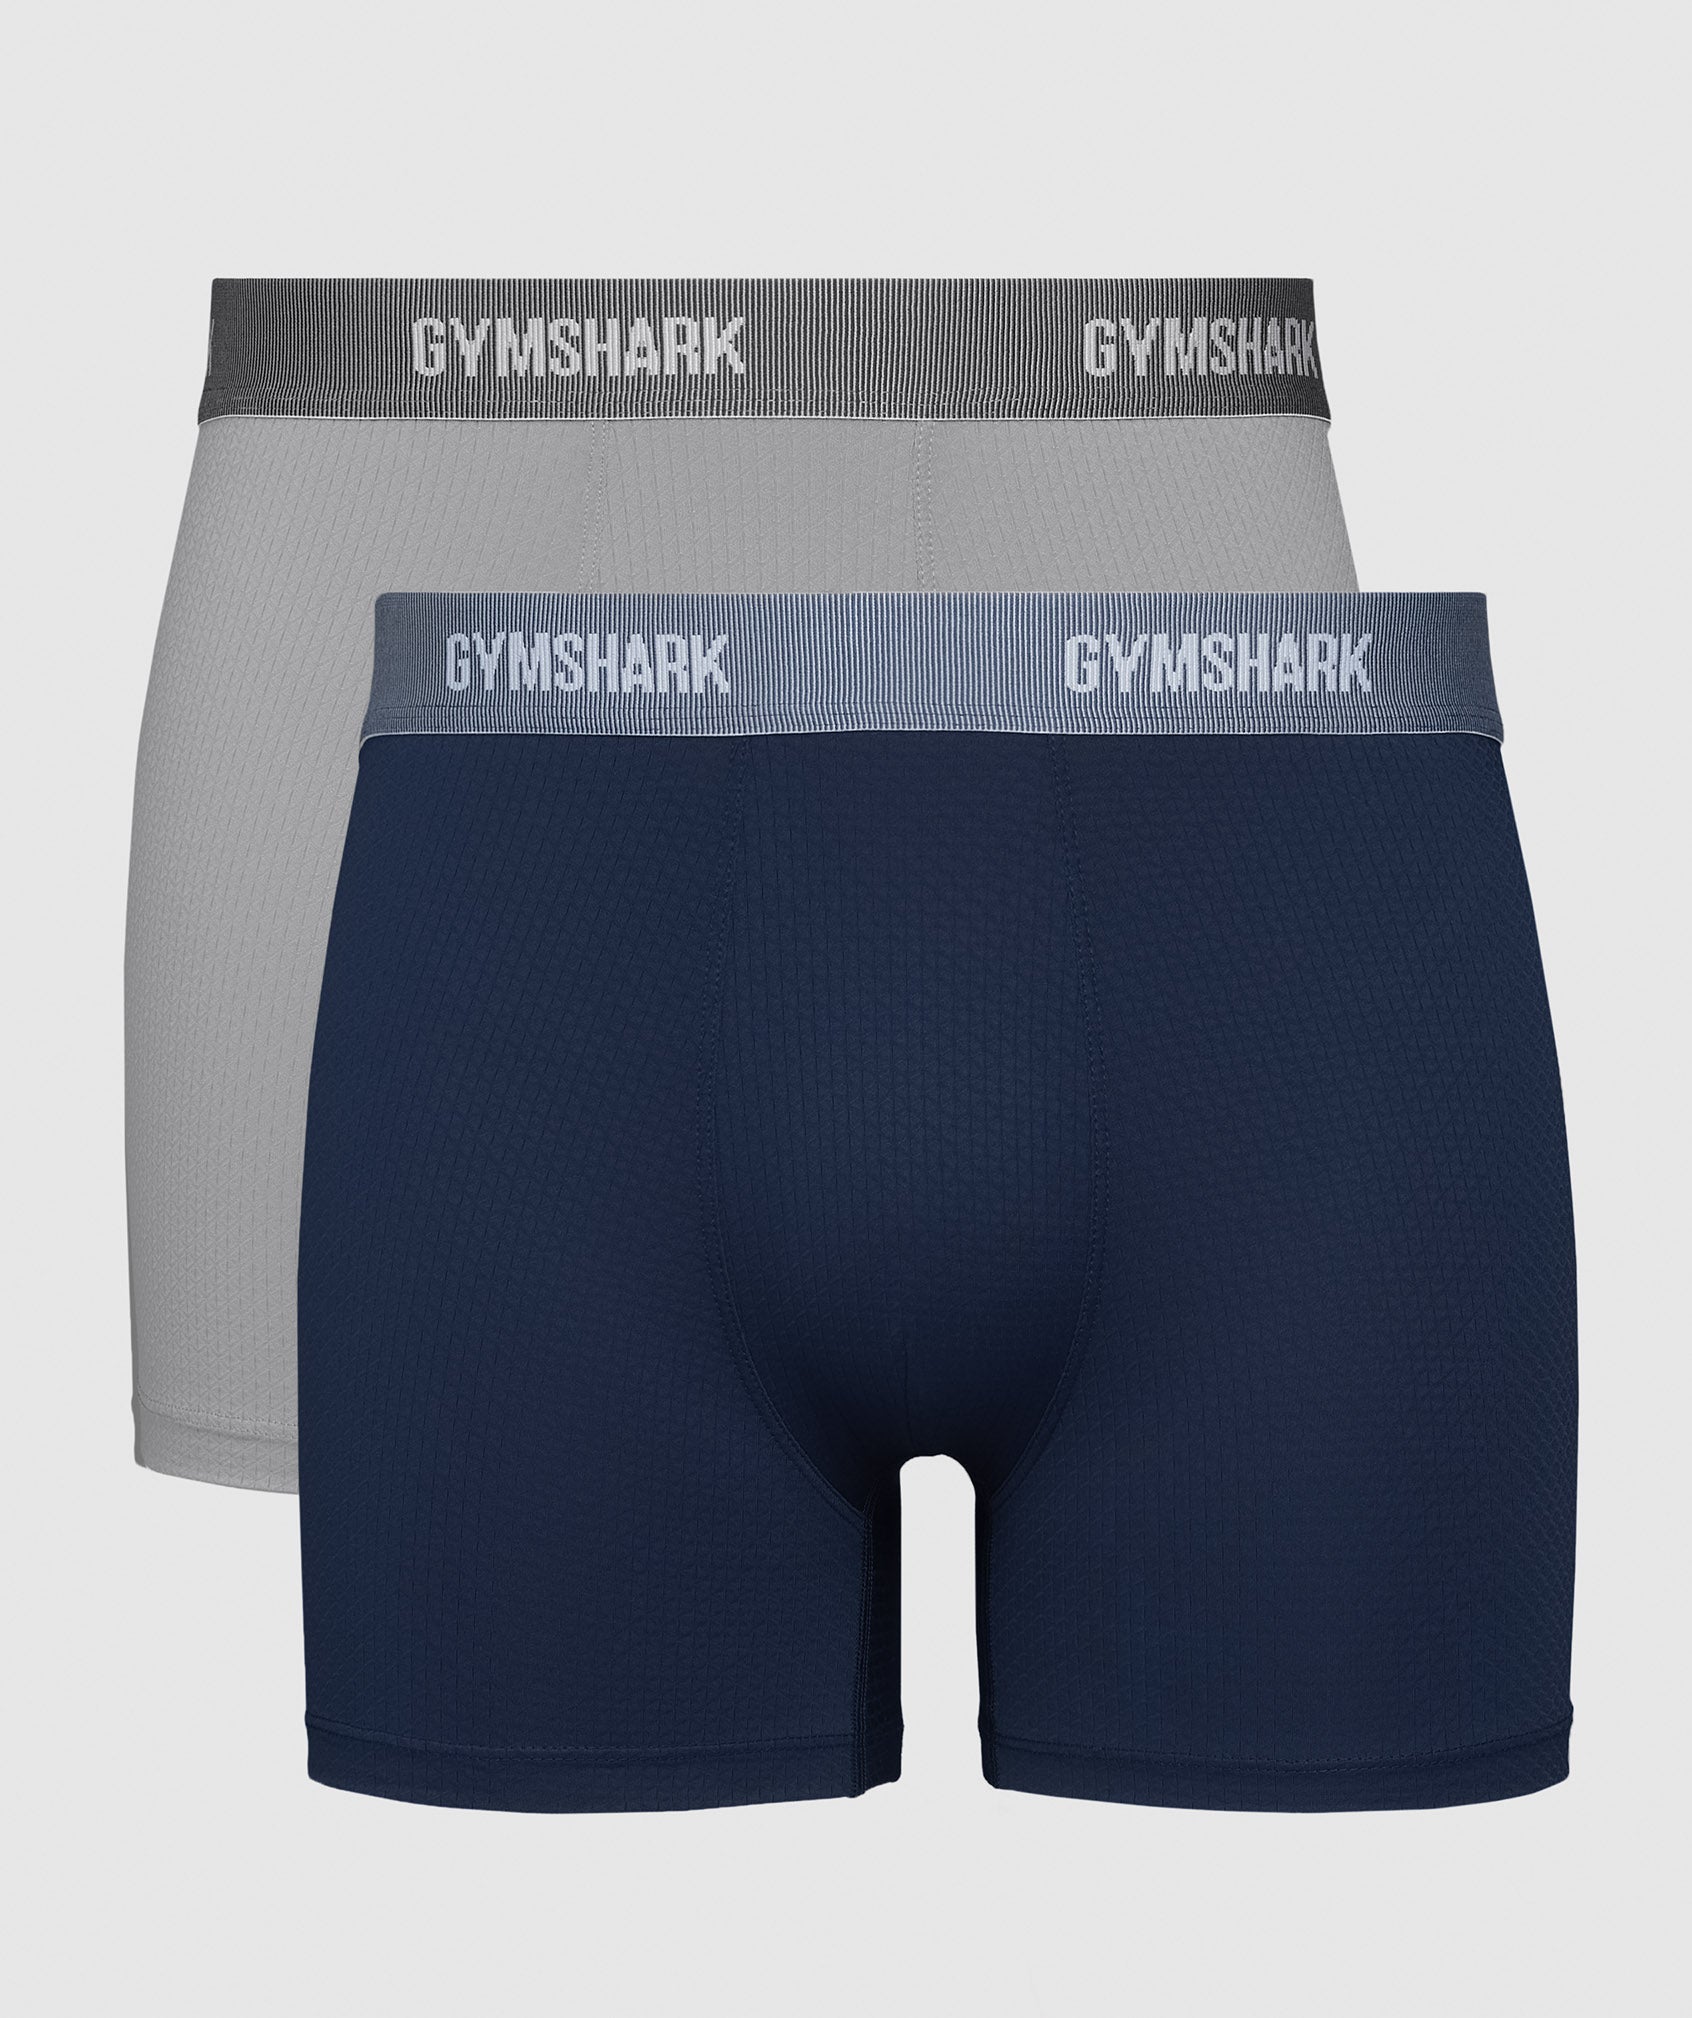 501 Basketball Men'S Sport Underwear Comfortable Underwear Cool